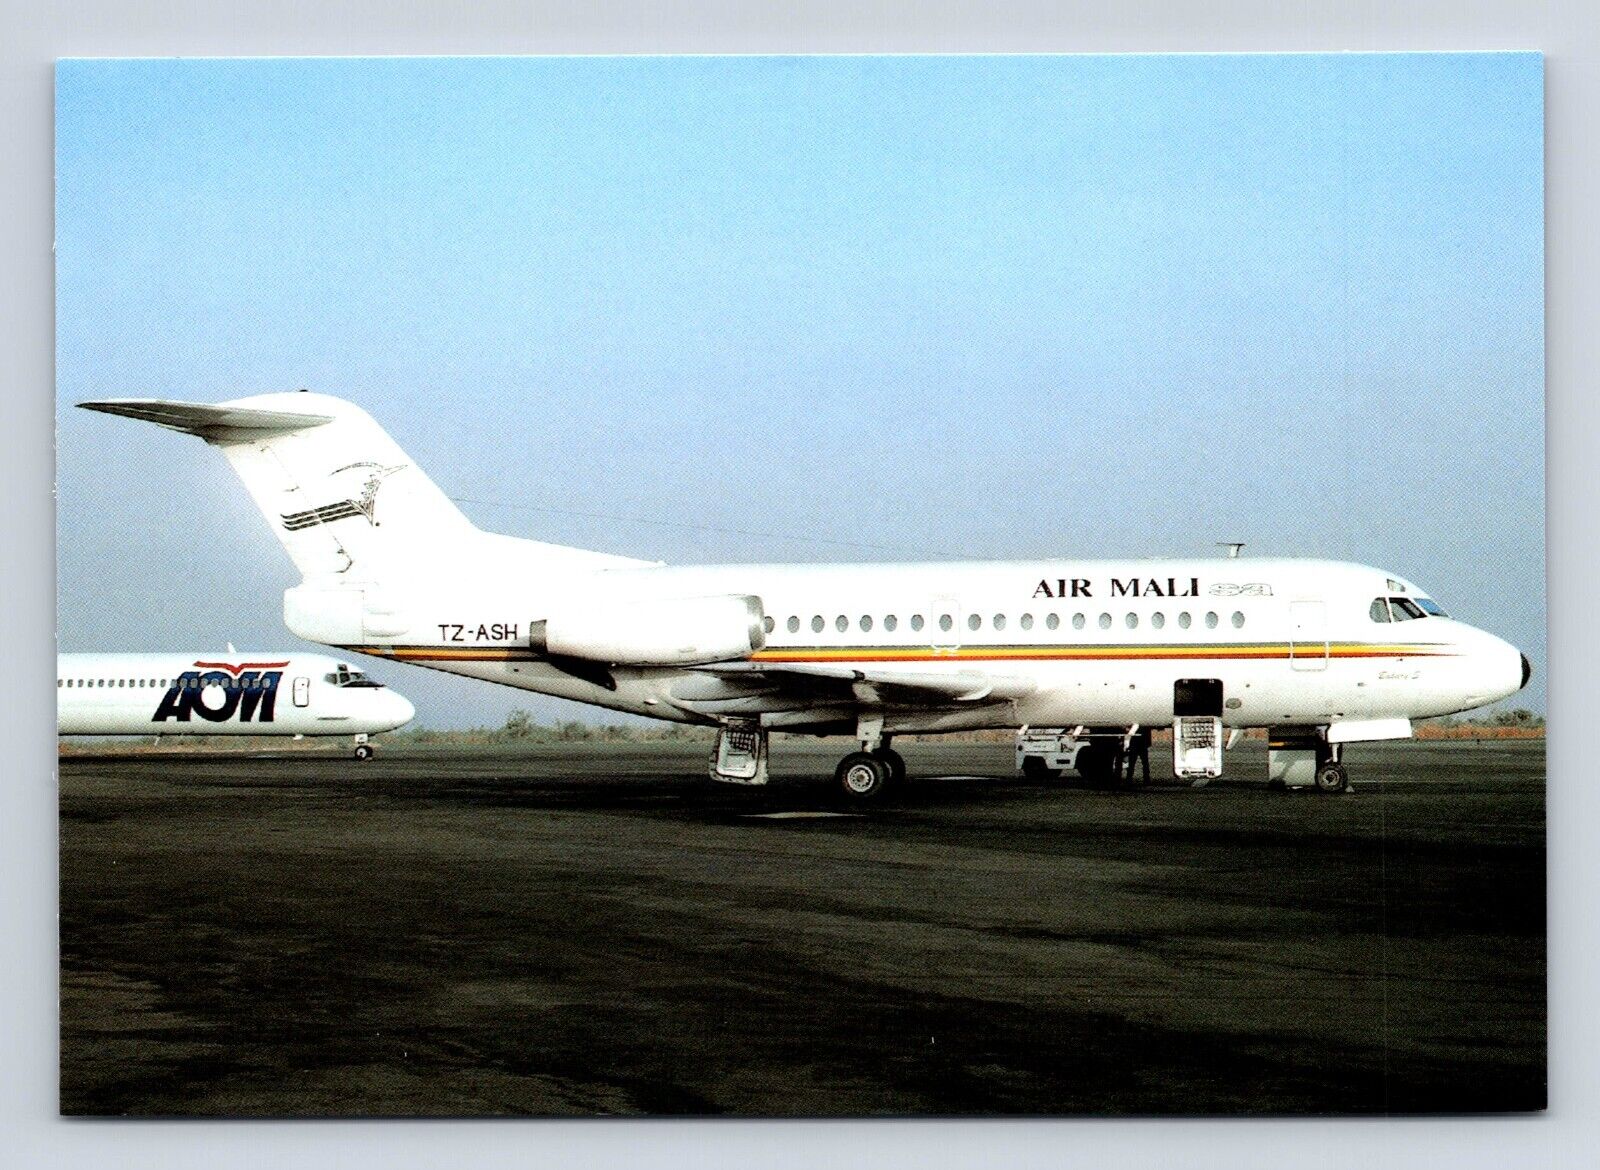 Air Mali F-28-1000 TZ-ASH Bamako 2000 c/n 11003 Airplane Airline Postcard Vtg A3